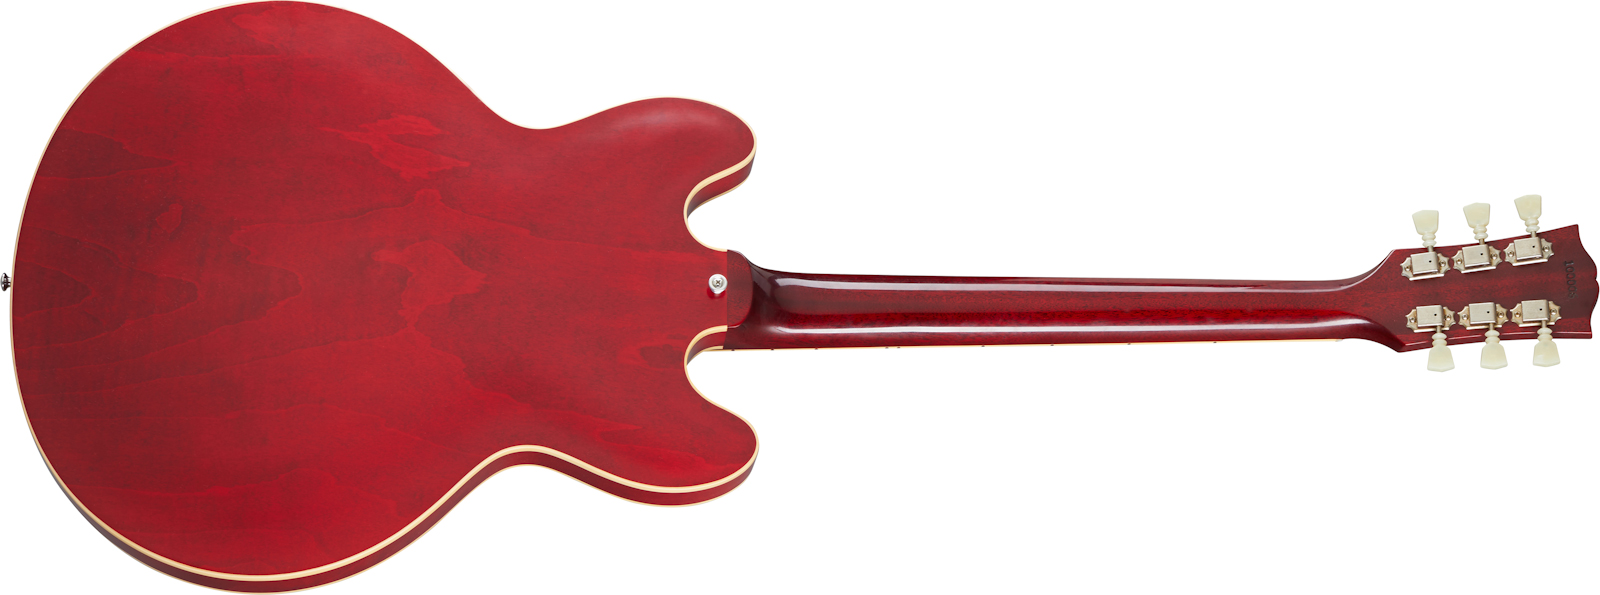 Gibson Custom Shop Historic Es-335 Reissue 1964 Lh Gaucher 2h Ht Rw - Vos Sixties Cherry - Guitarra electrica para zurdos - Variation 1